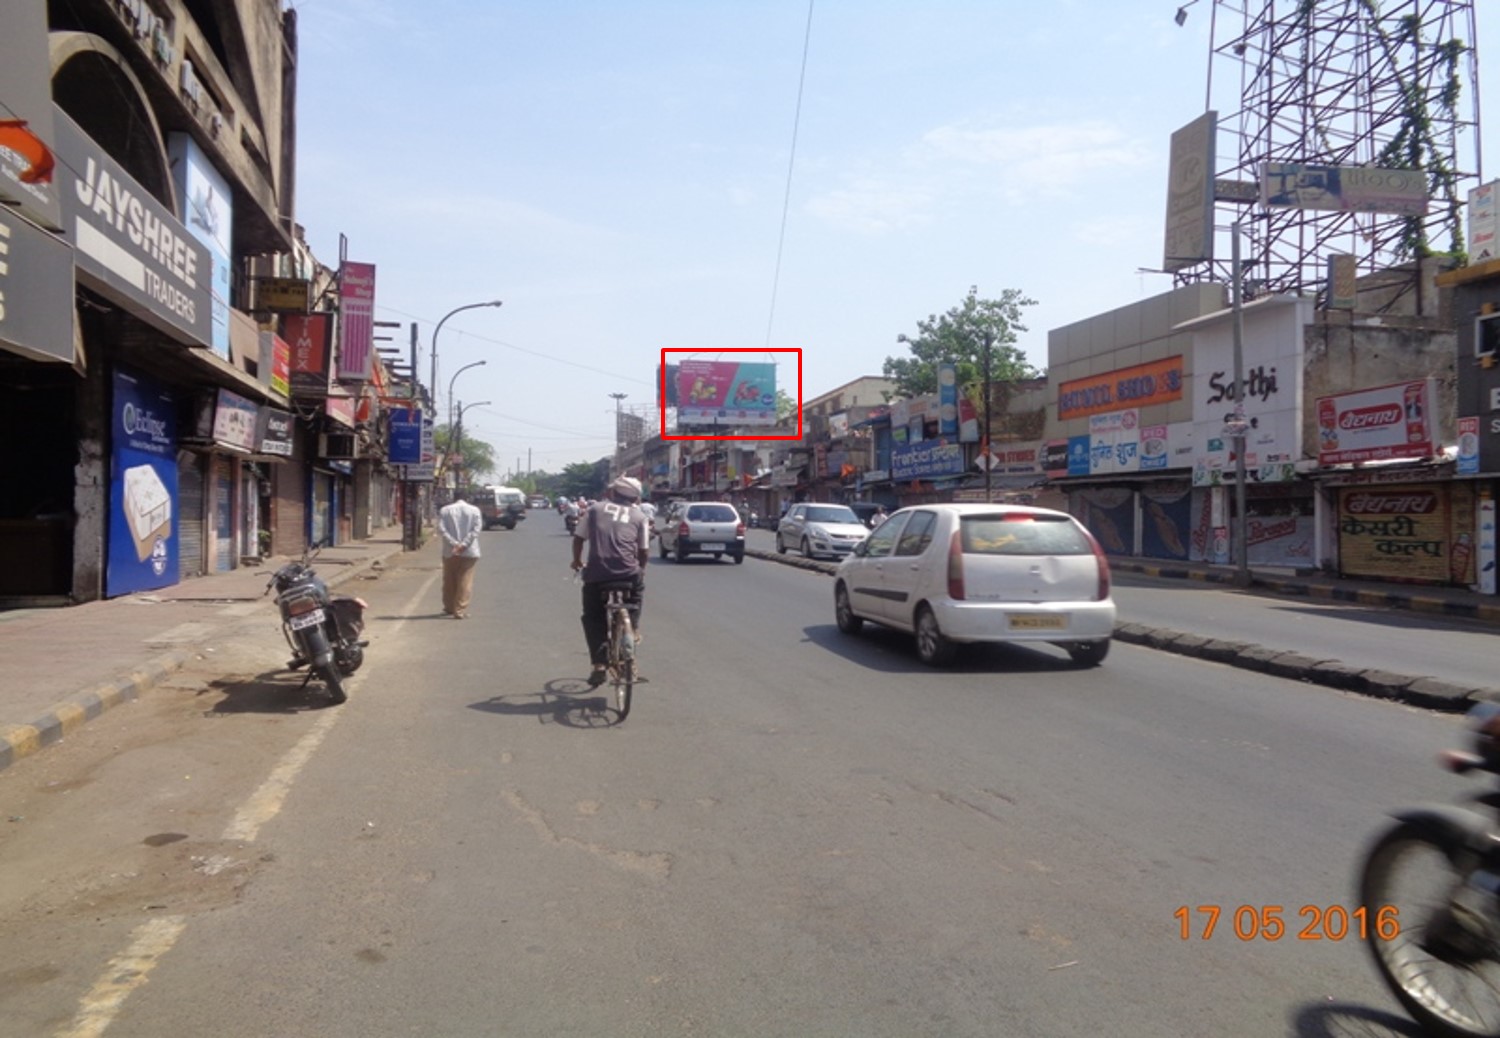 Sadar, Nr Haldiram, Nagpur